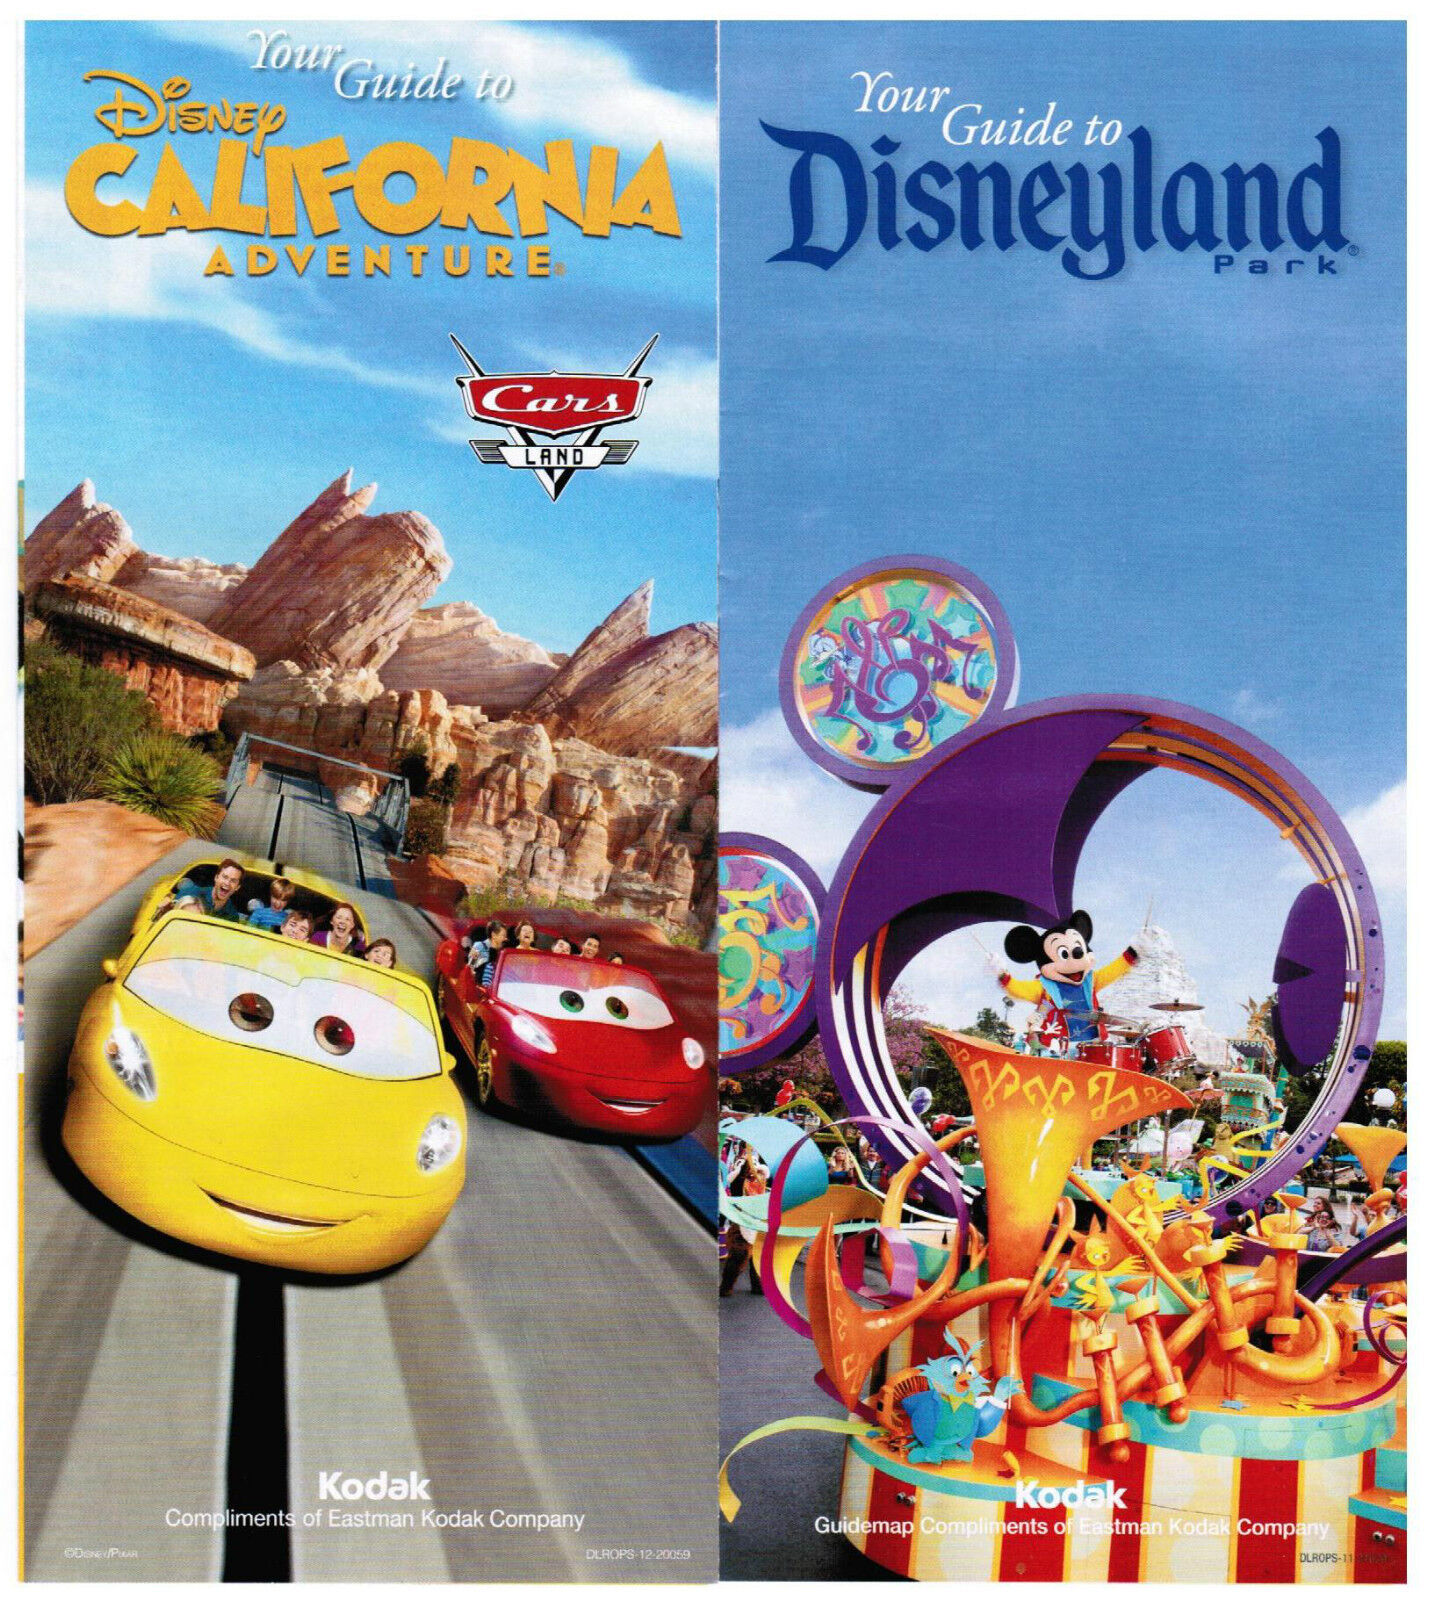 Disneyland/CA Adventure Guides June 16-21, 2012 w/schedules